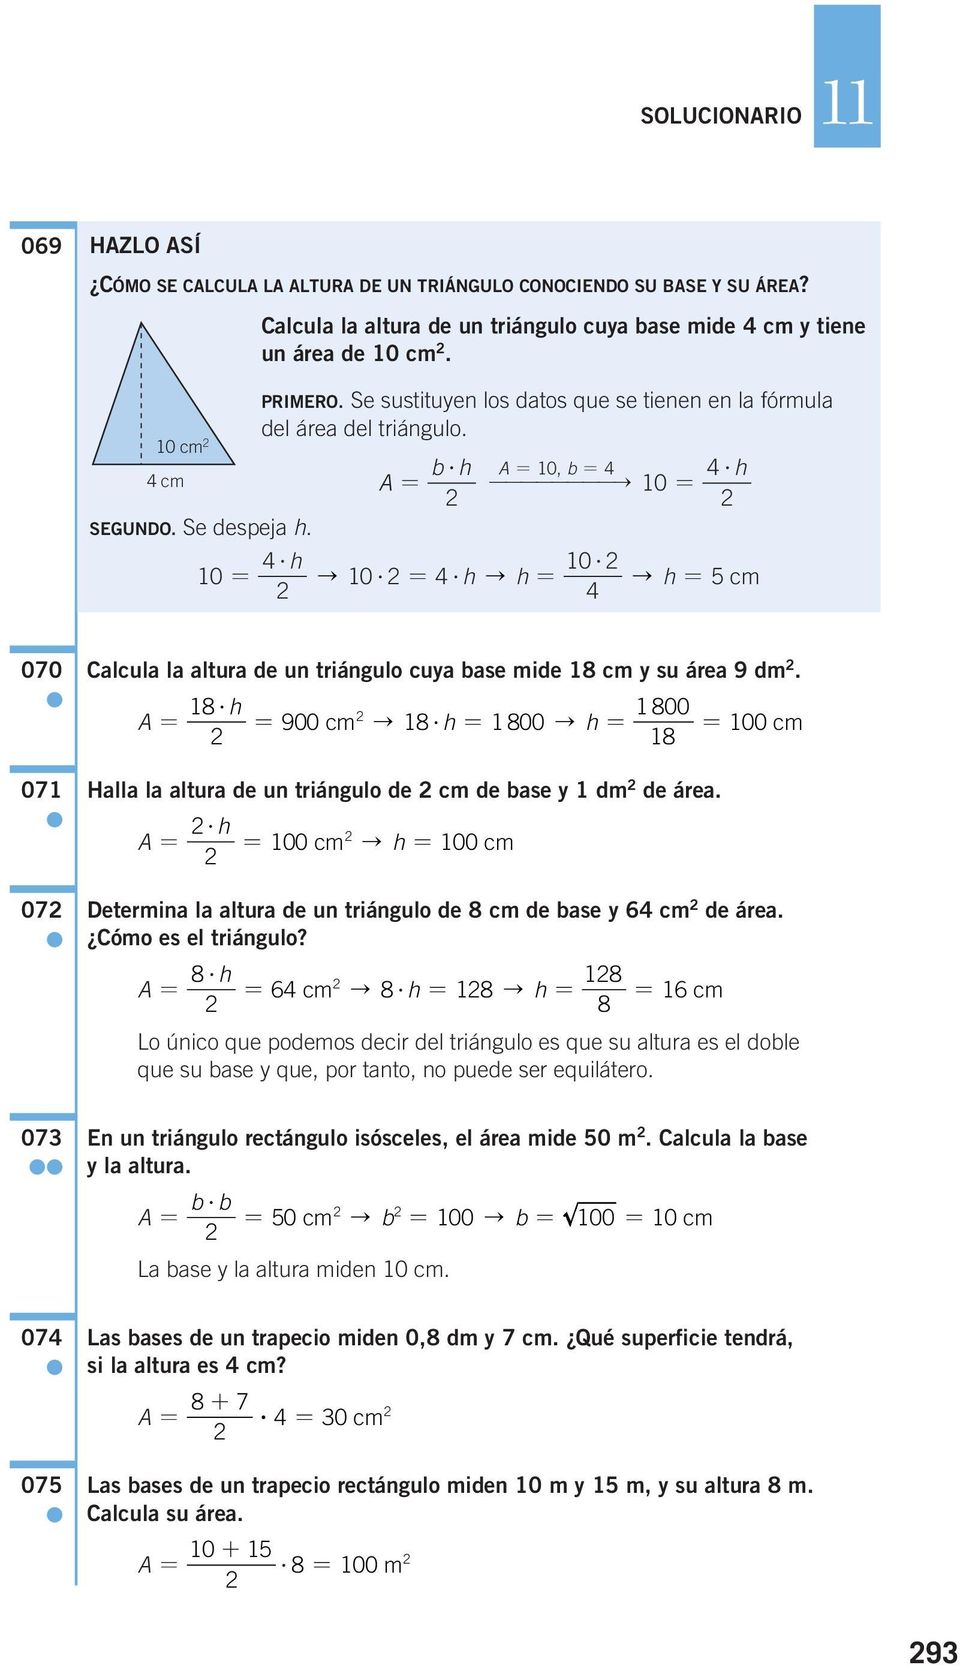 --------" 4?h 10 = 4? h 10? 10 = " 10? = 4? h" h = " h = 5 cm 4 070 071 07 Calcula la altura de un triángulo cuya base mide 18 cm y su área 9 dm. 18? h A = 1 800 = 900 cm " 18?